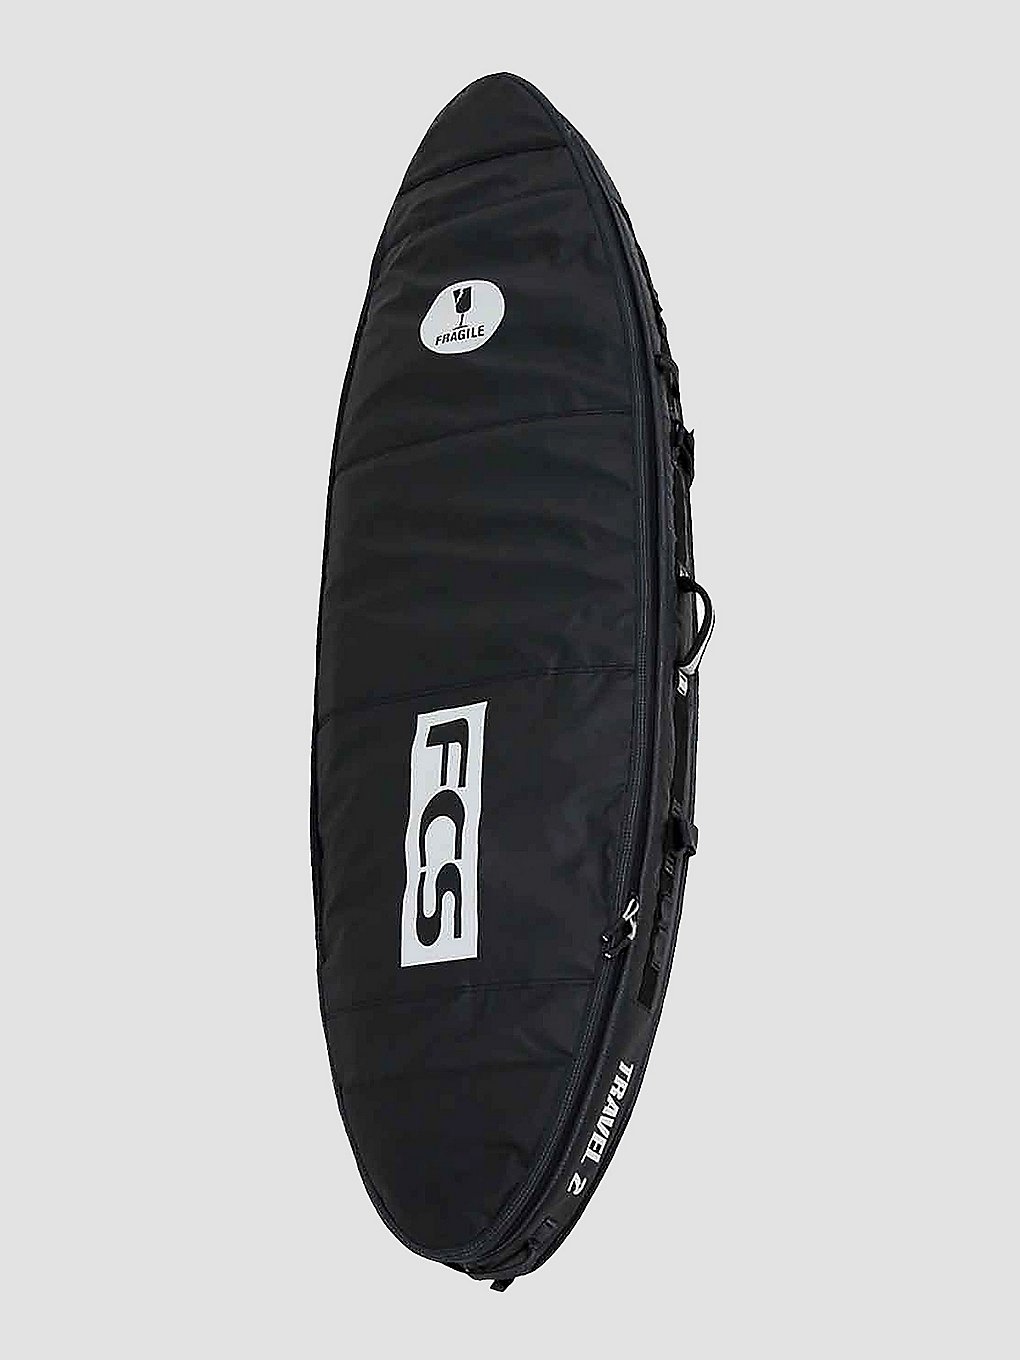 FCS Travel 2 All Purpose 6'3 Surfboard-Tasche grey kaufen